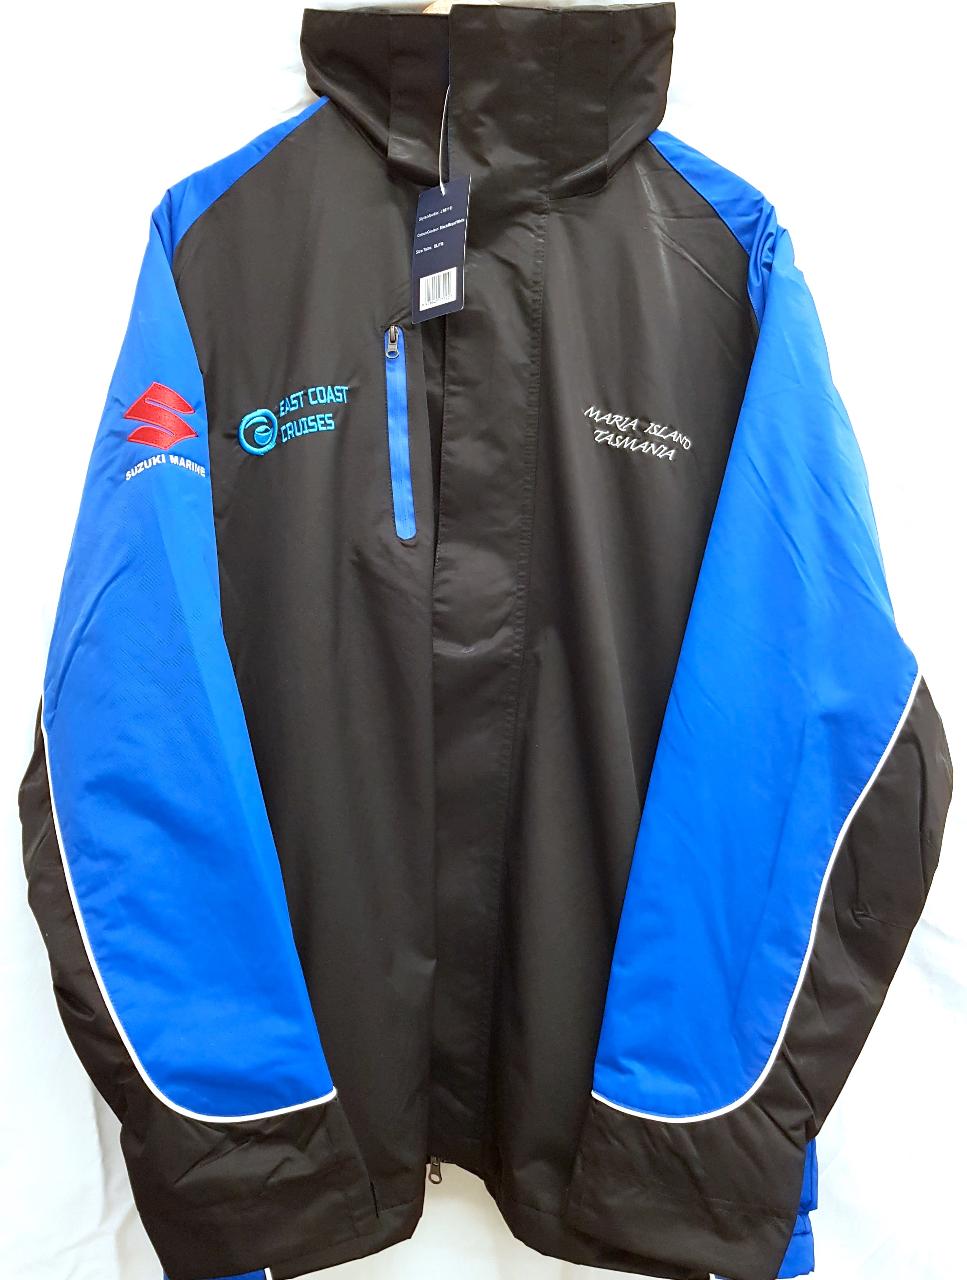 Crew jacket - 2X Large